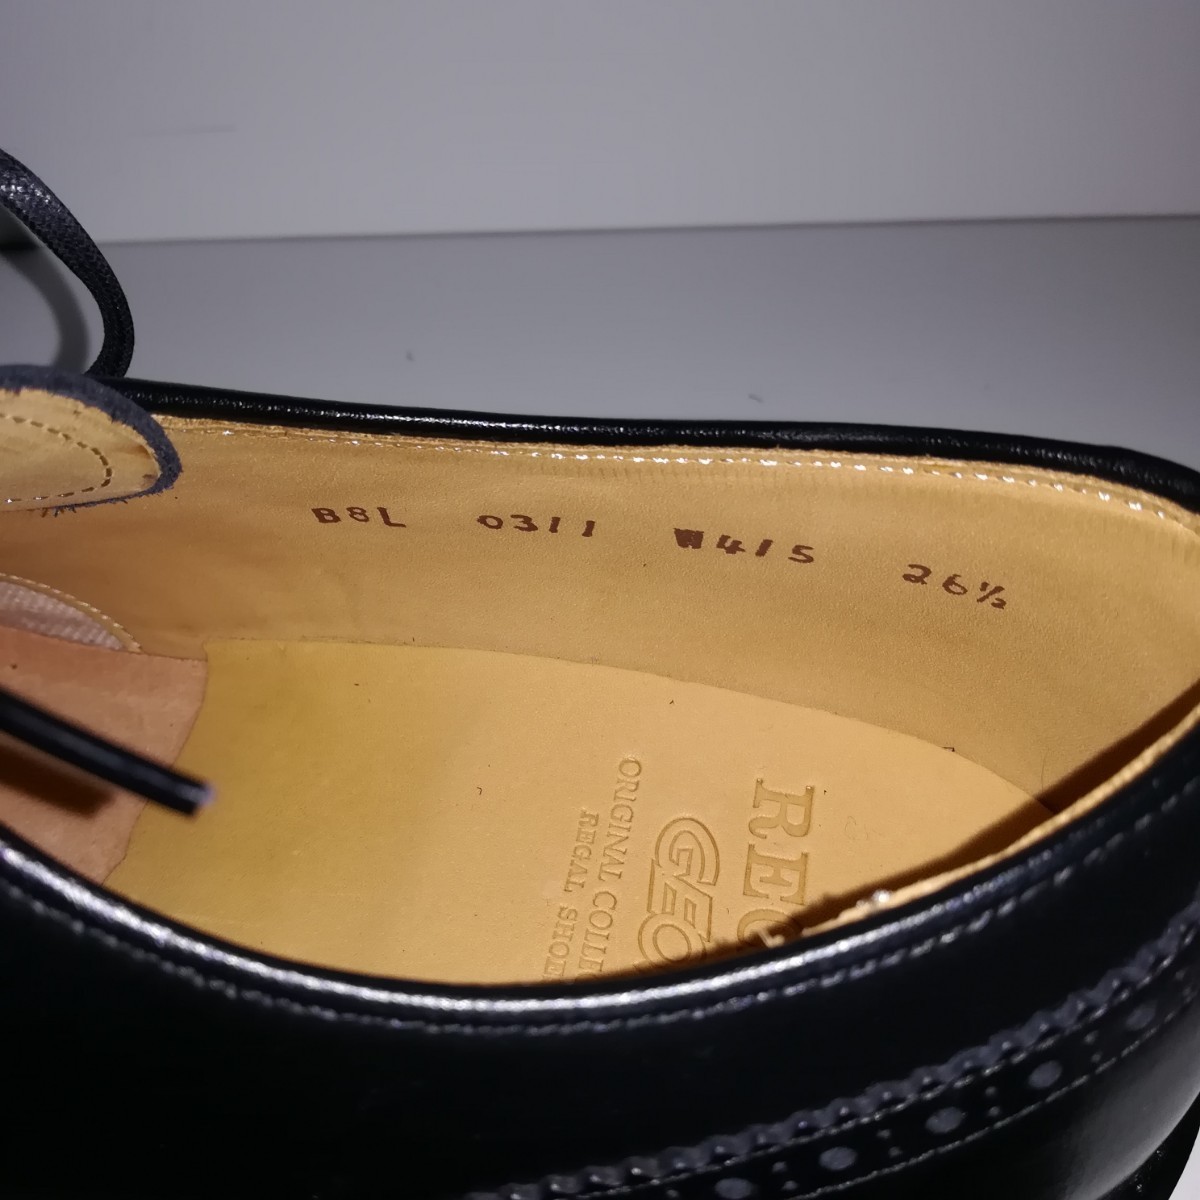 【新品同様・試着程度】 ★リーガル REGAL★ GEOX W415 ウイングチップ 26.5 黒 ドレスシューズ ビジネス 革靴 紳士靴 _画像8